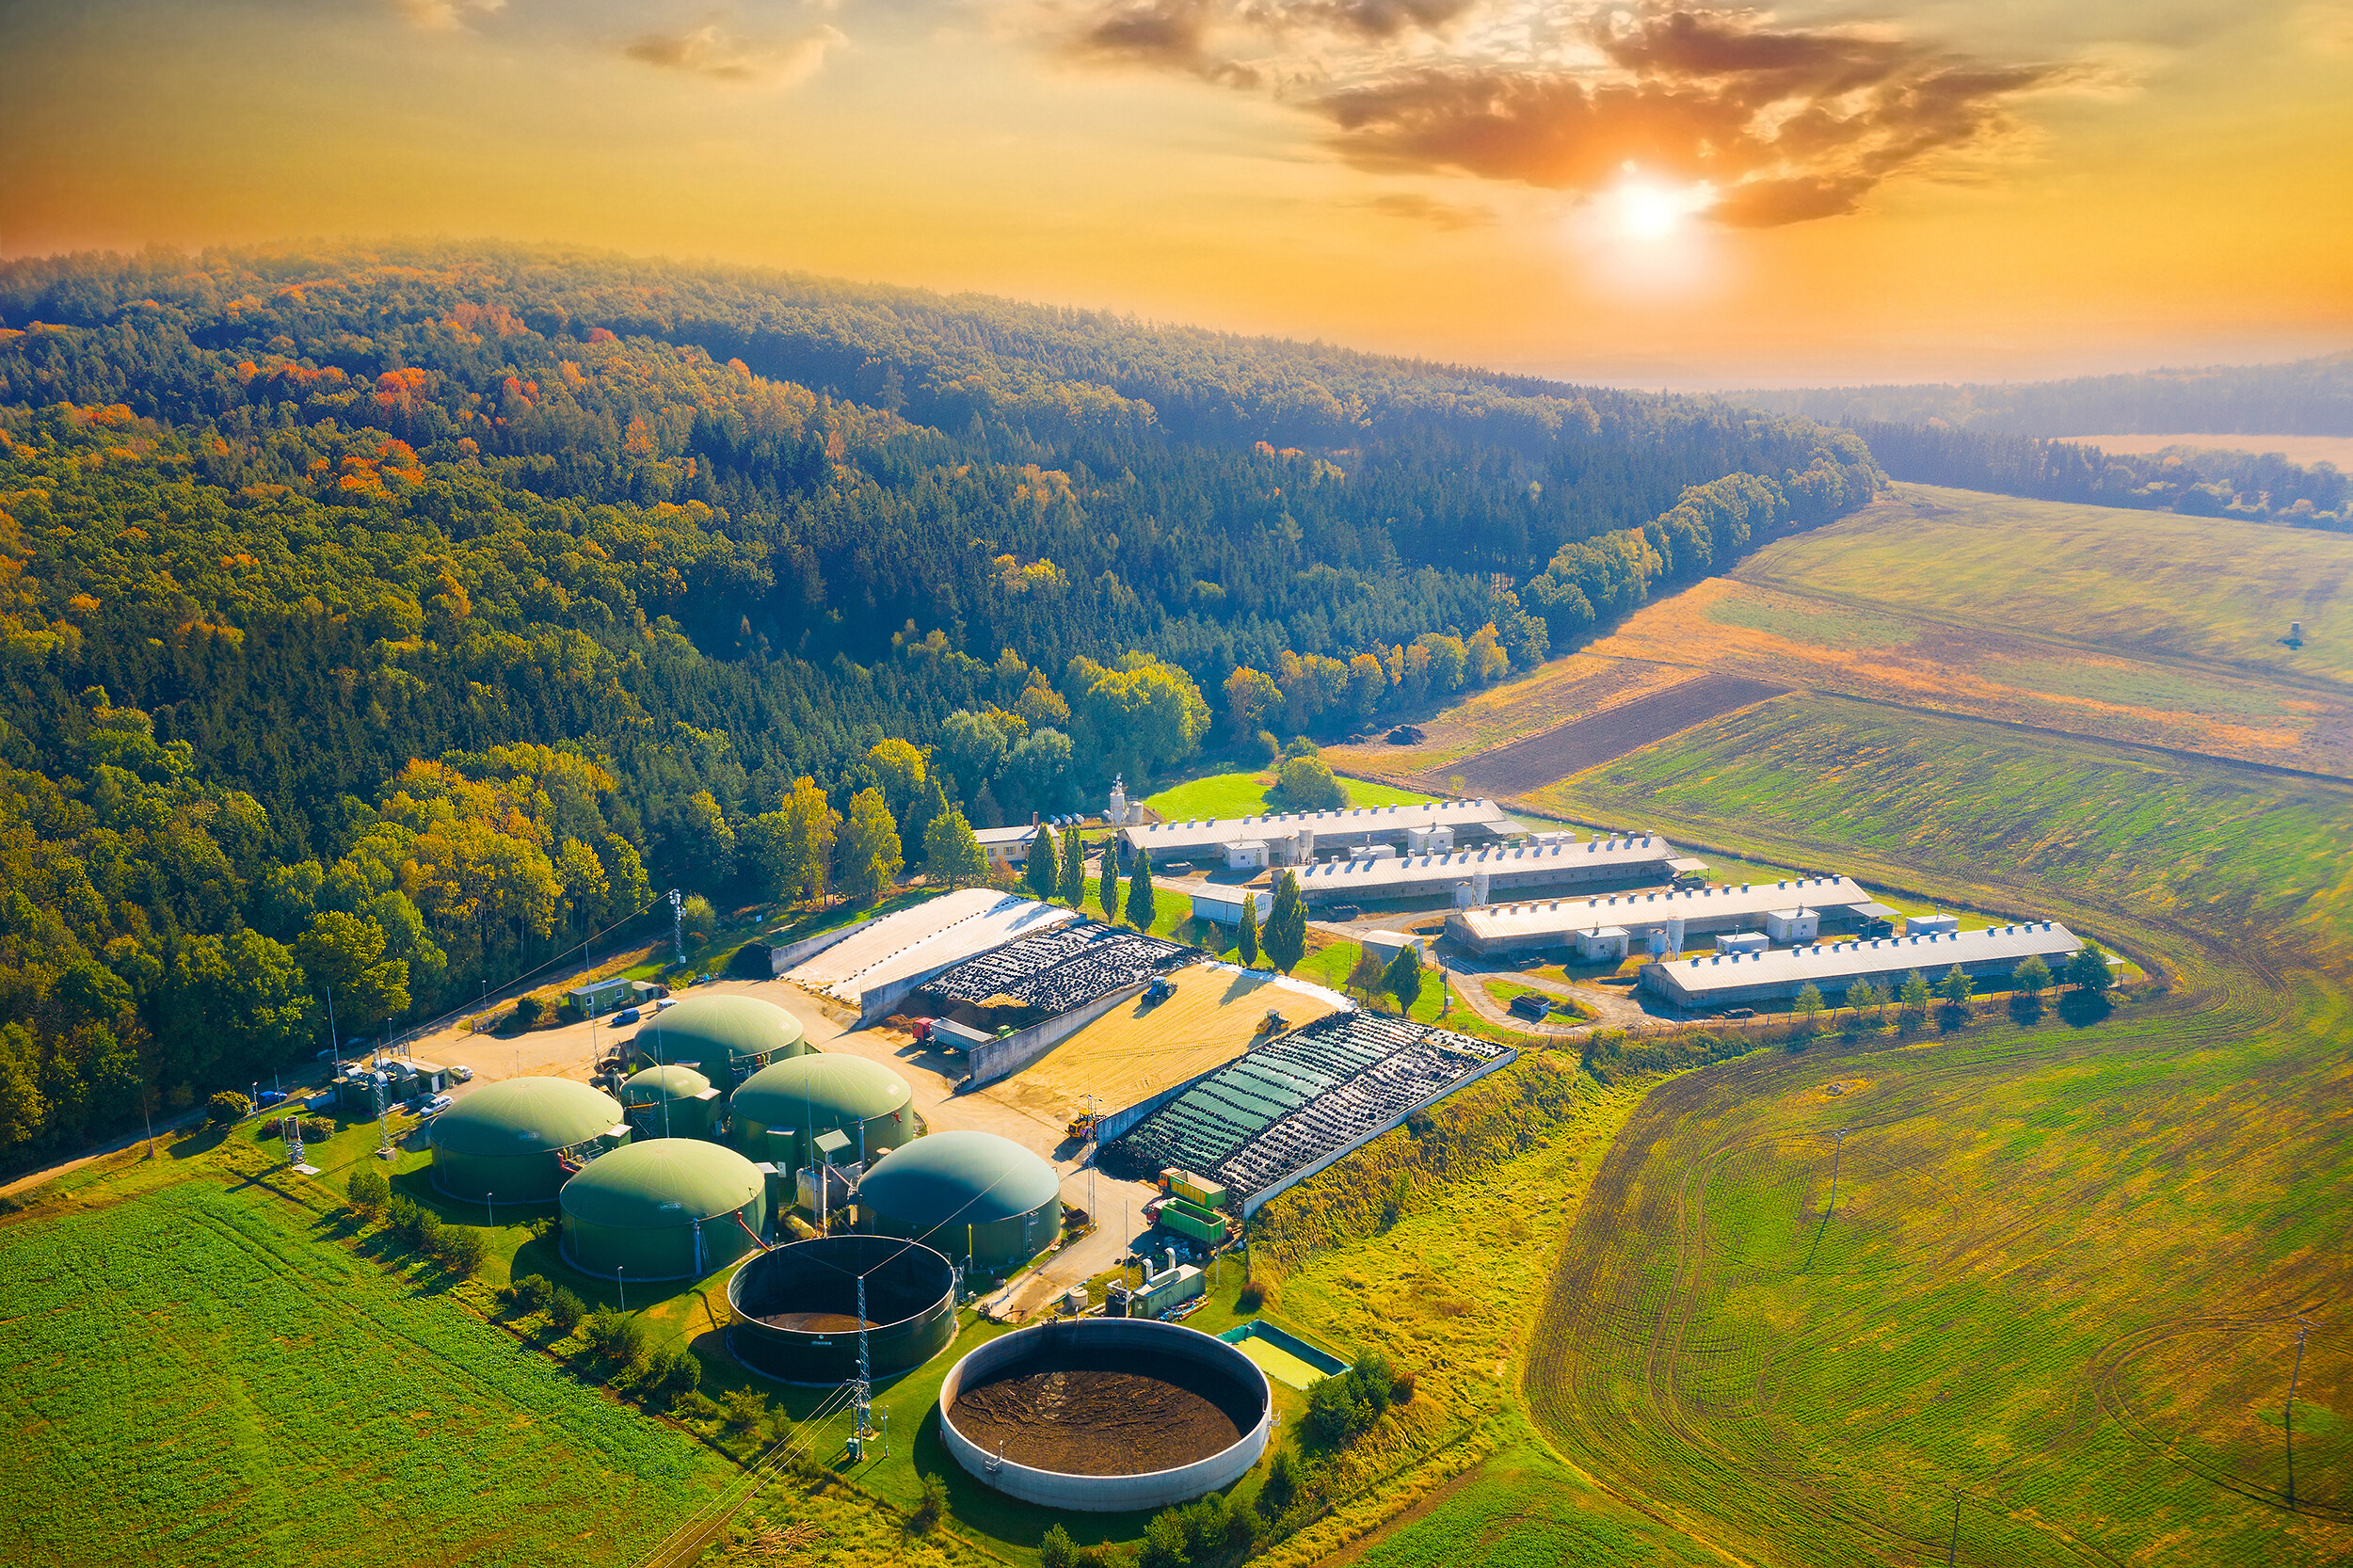 Biogas plant in agricultural landscape.